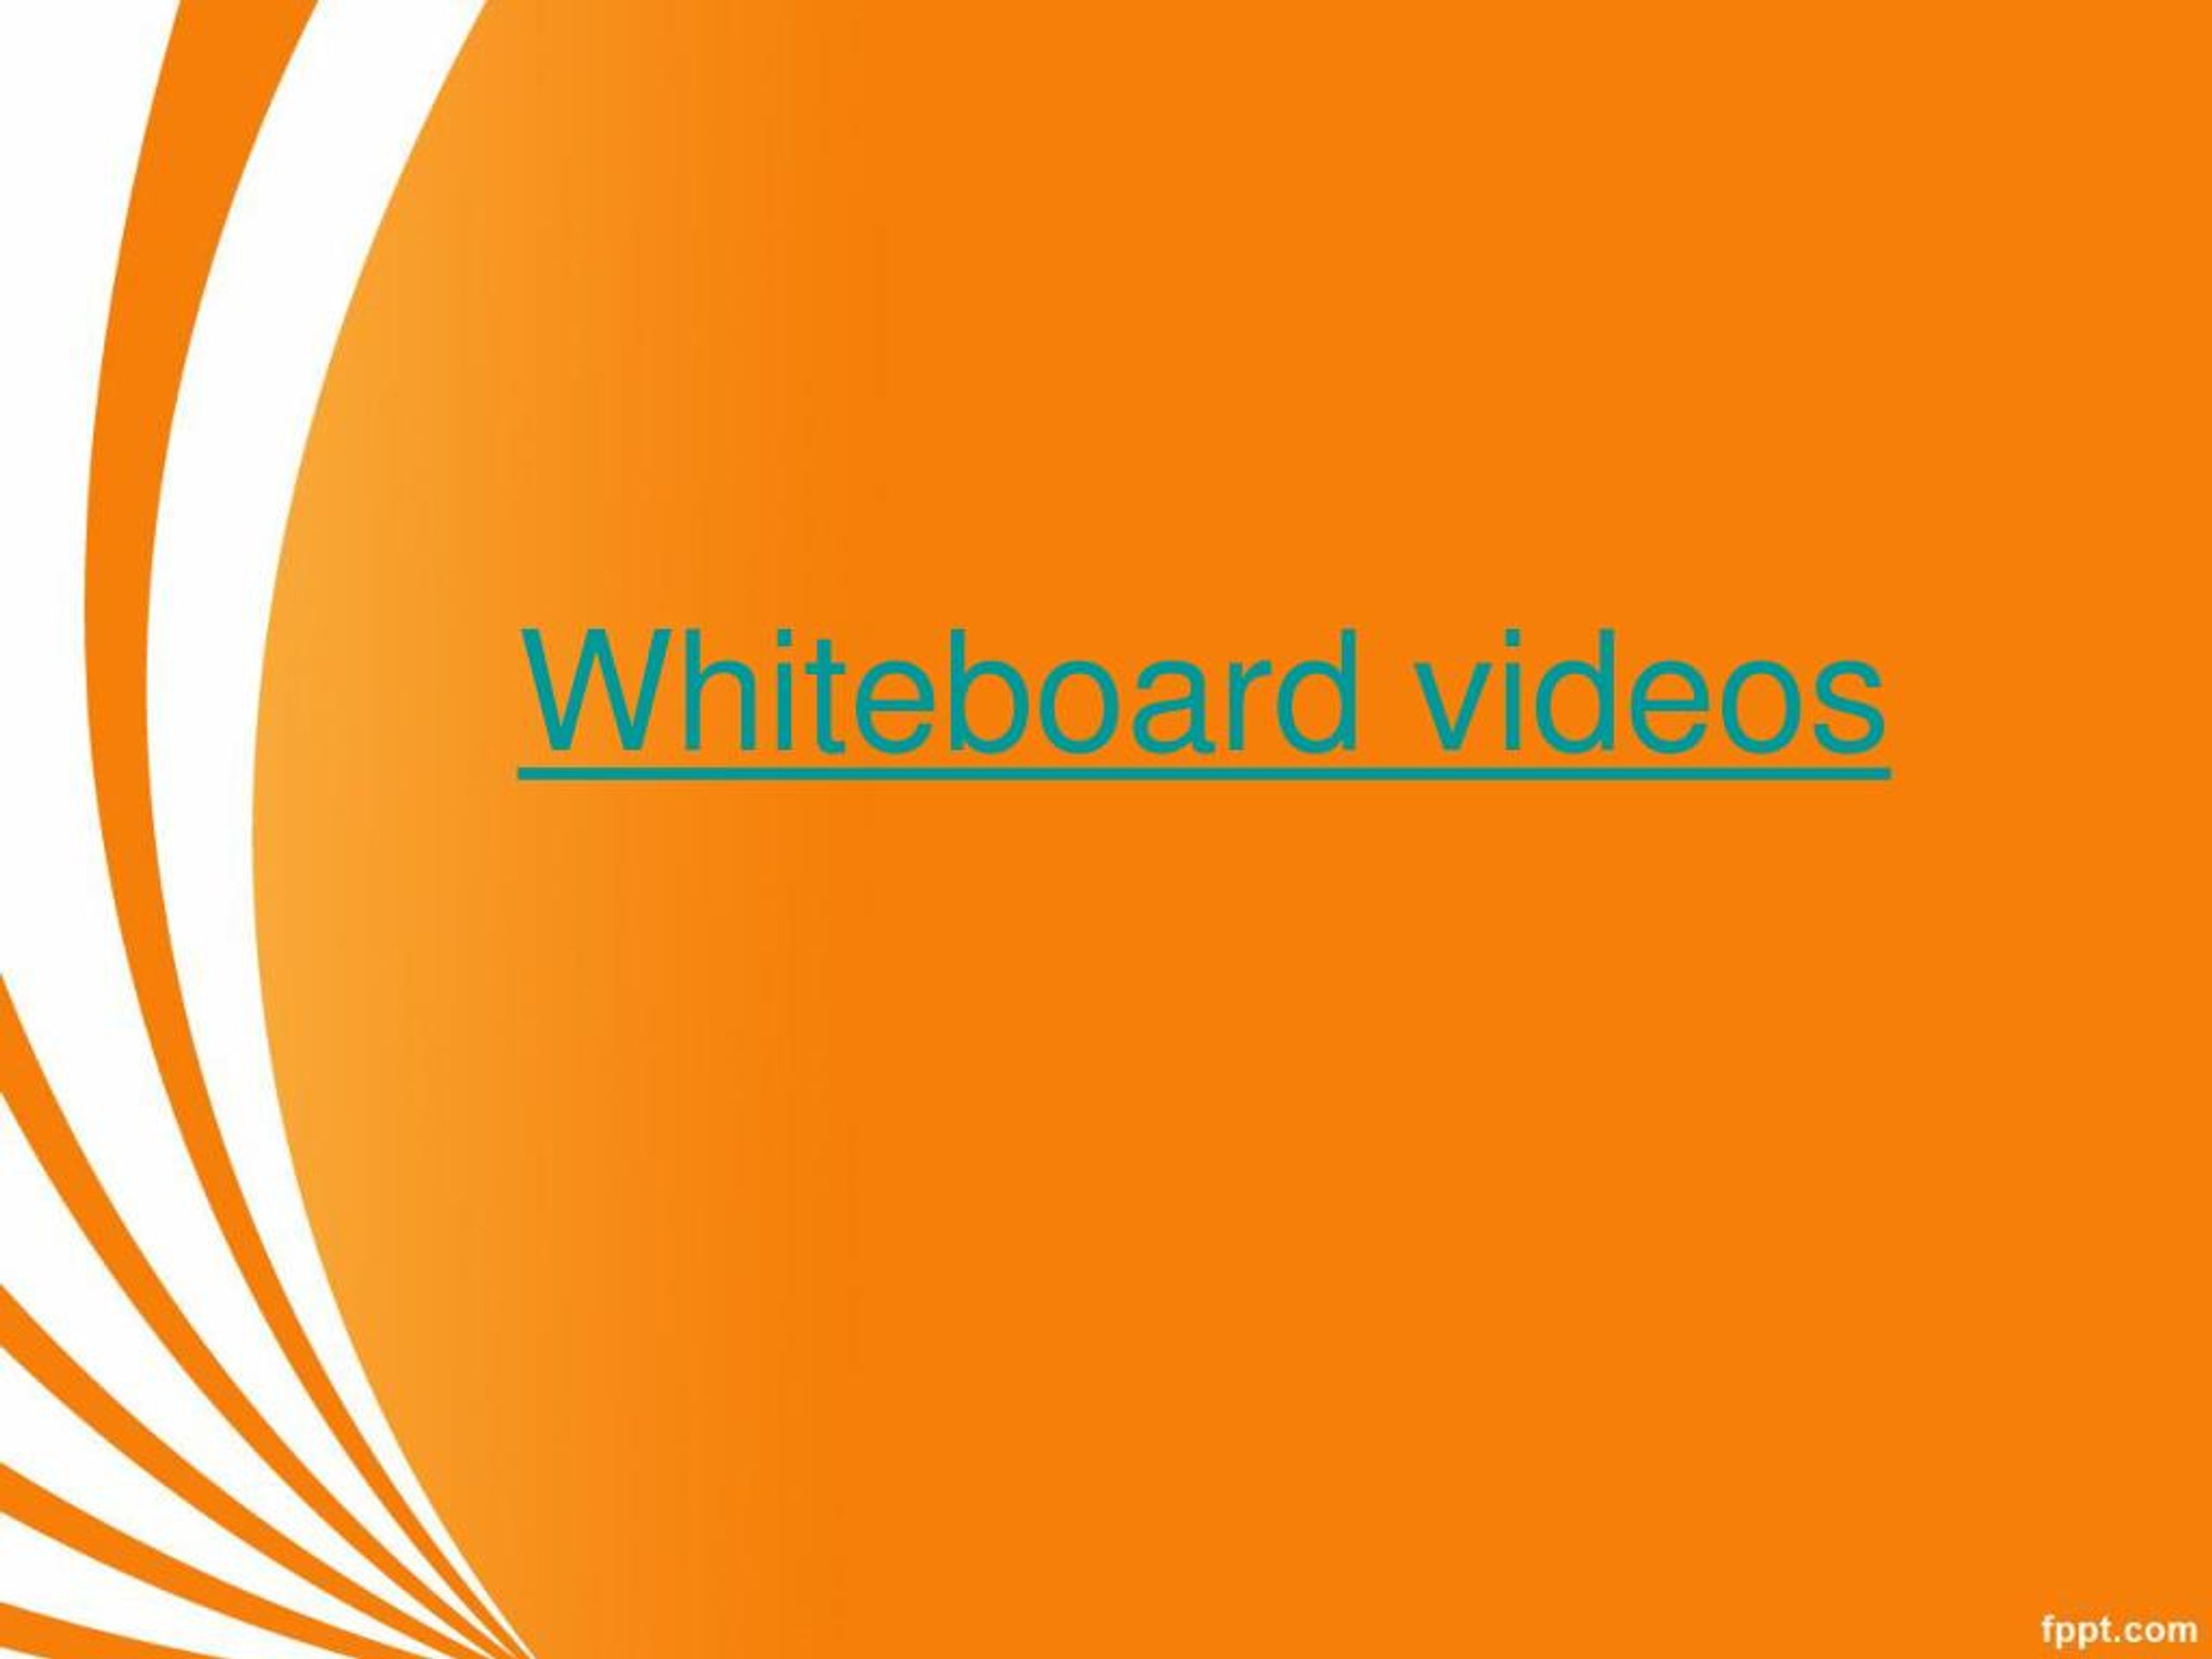 Whiteboard animation - Wikipedia